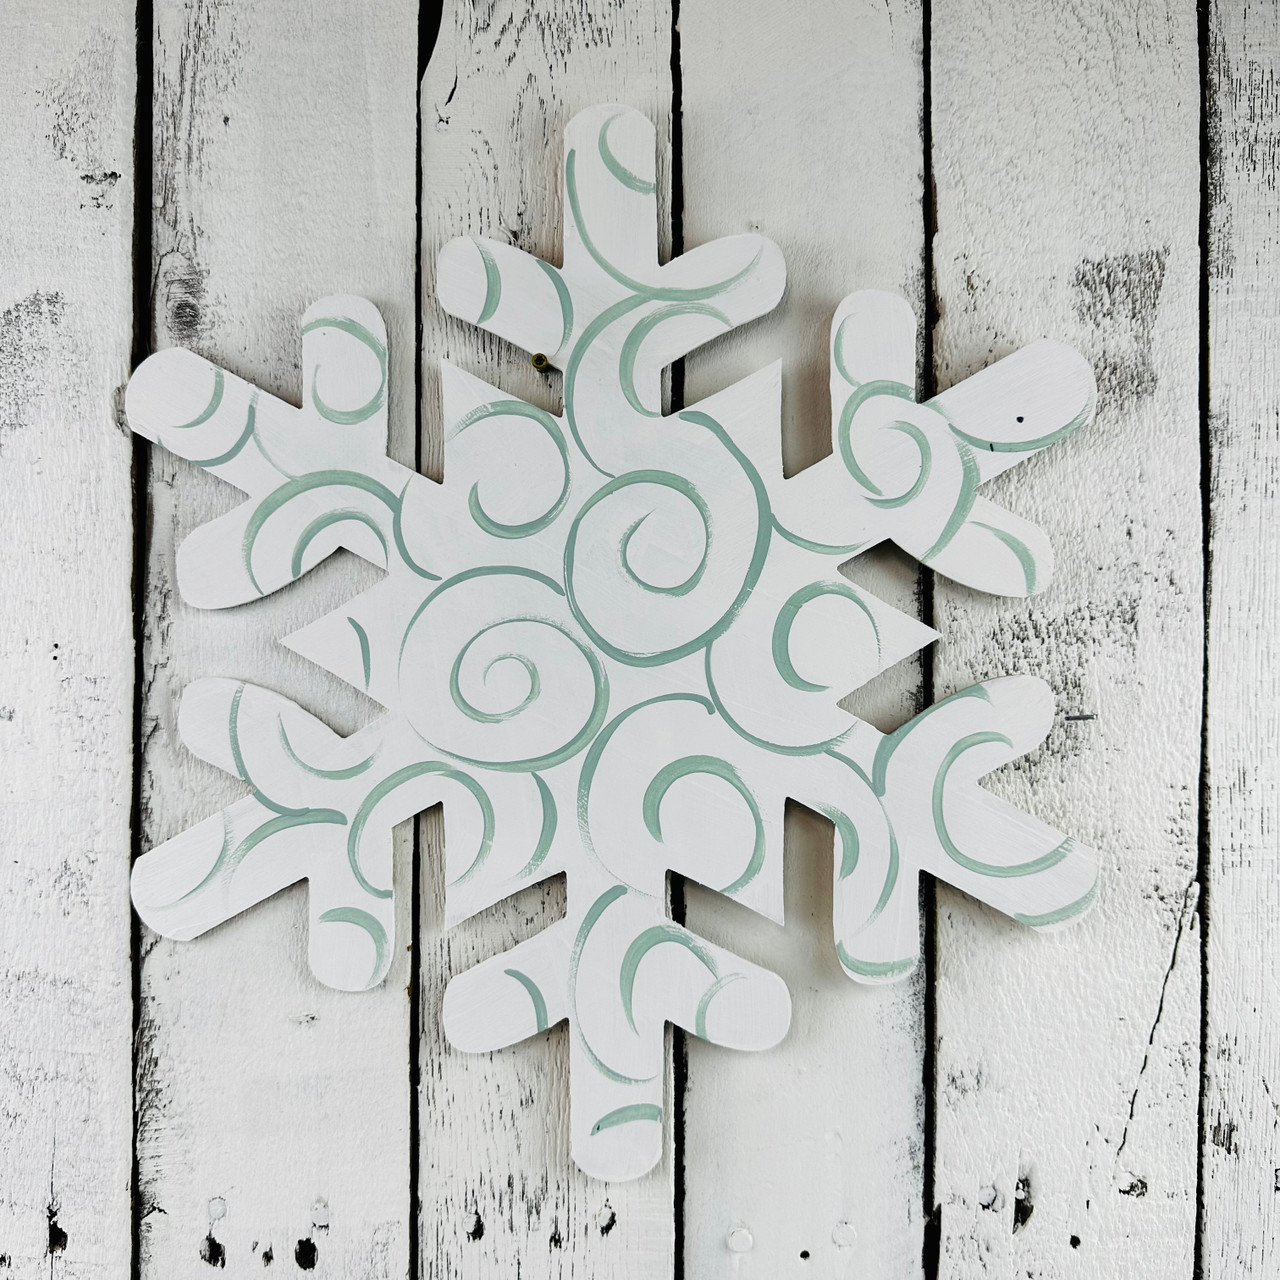 Wood Snowflake Cutouts